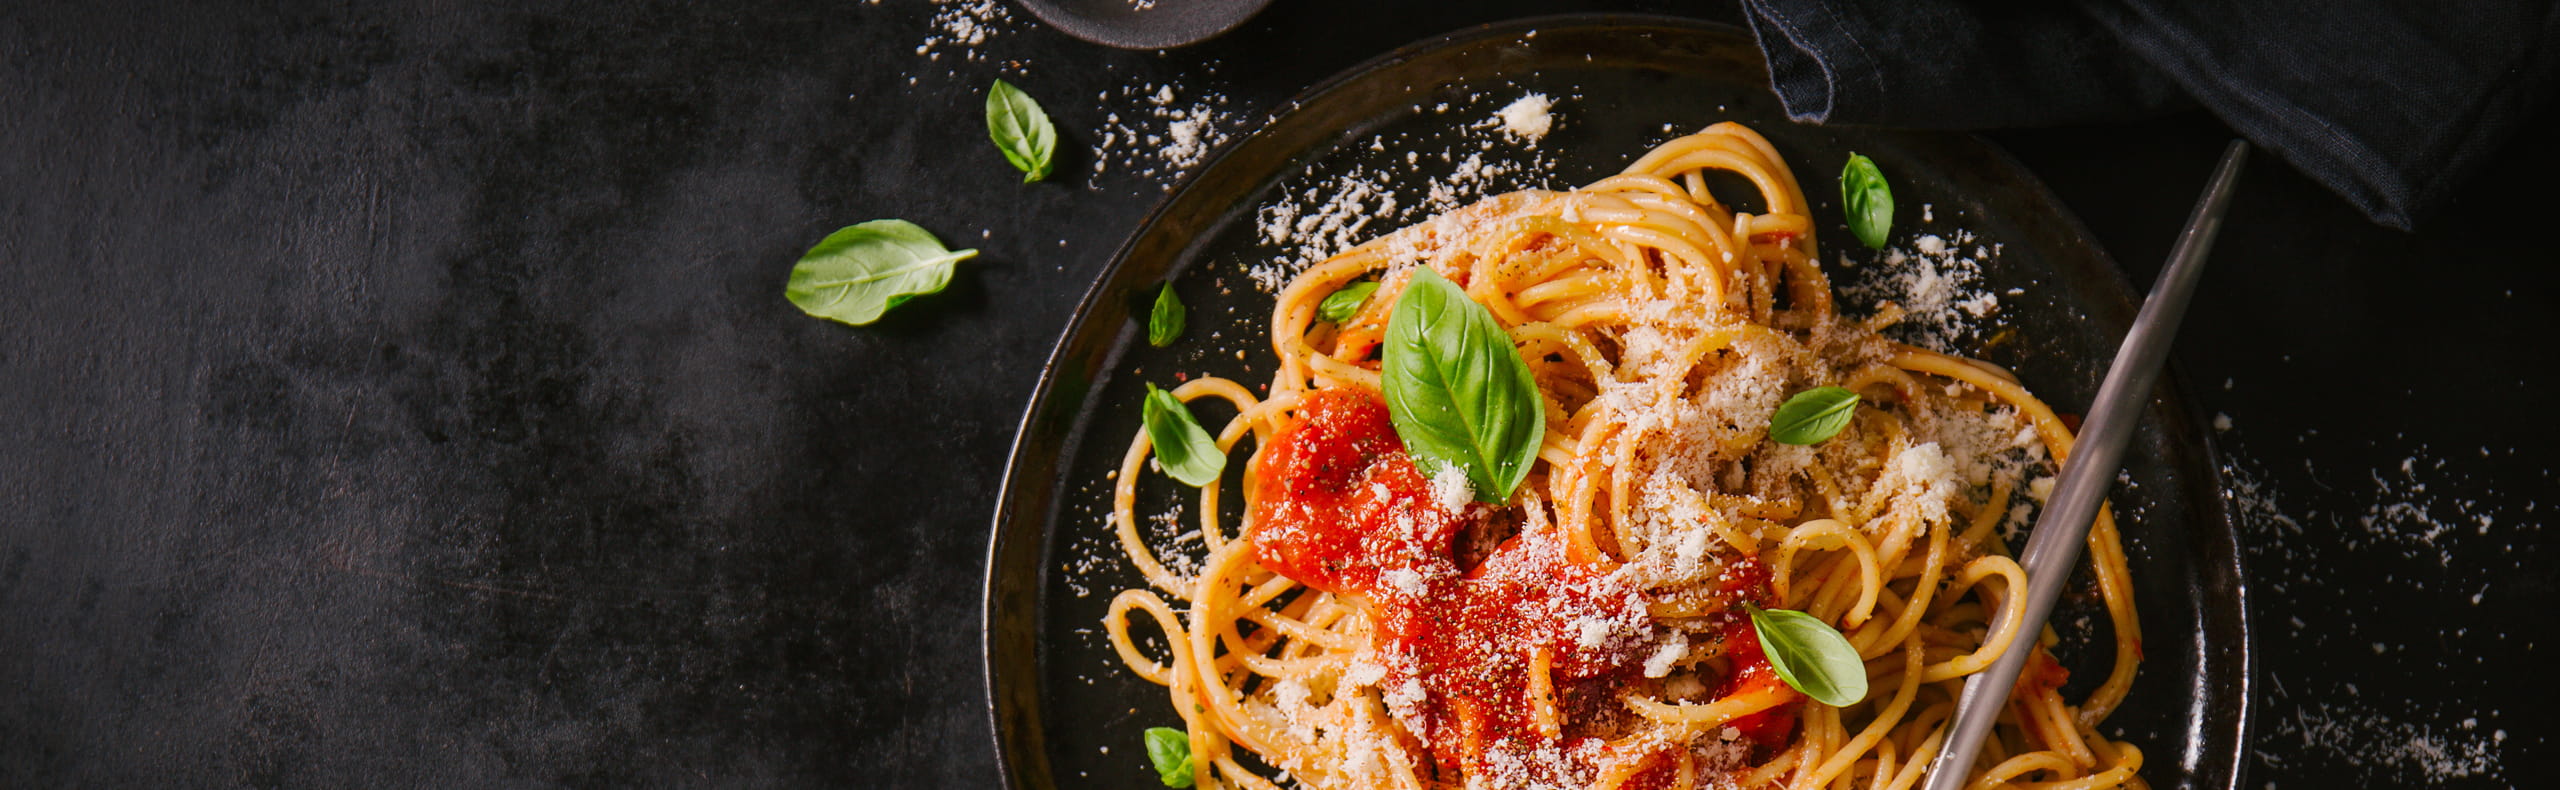 spaghetti danie kuchni włoskiej